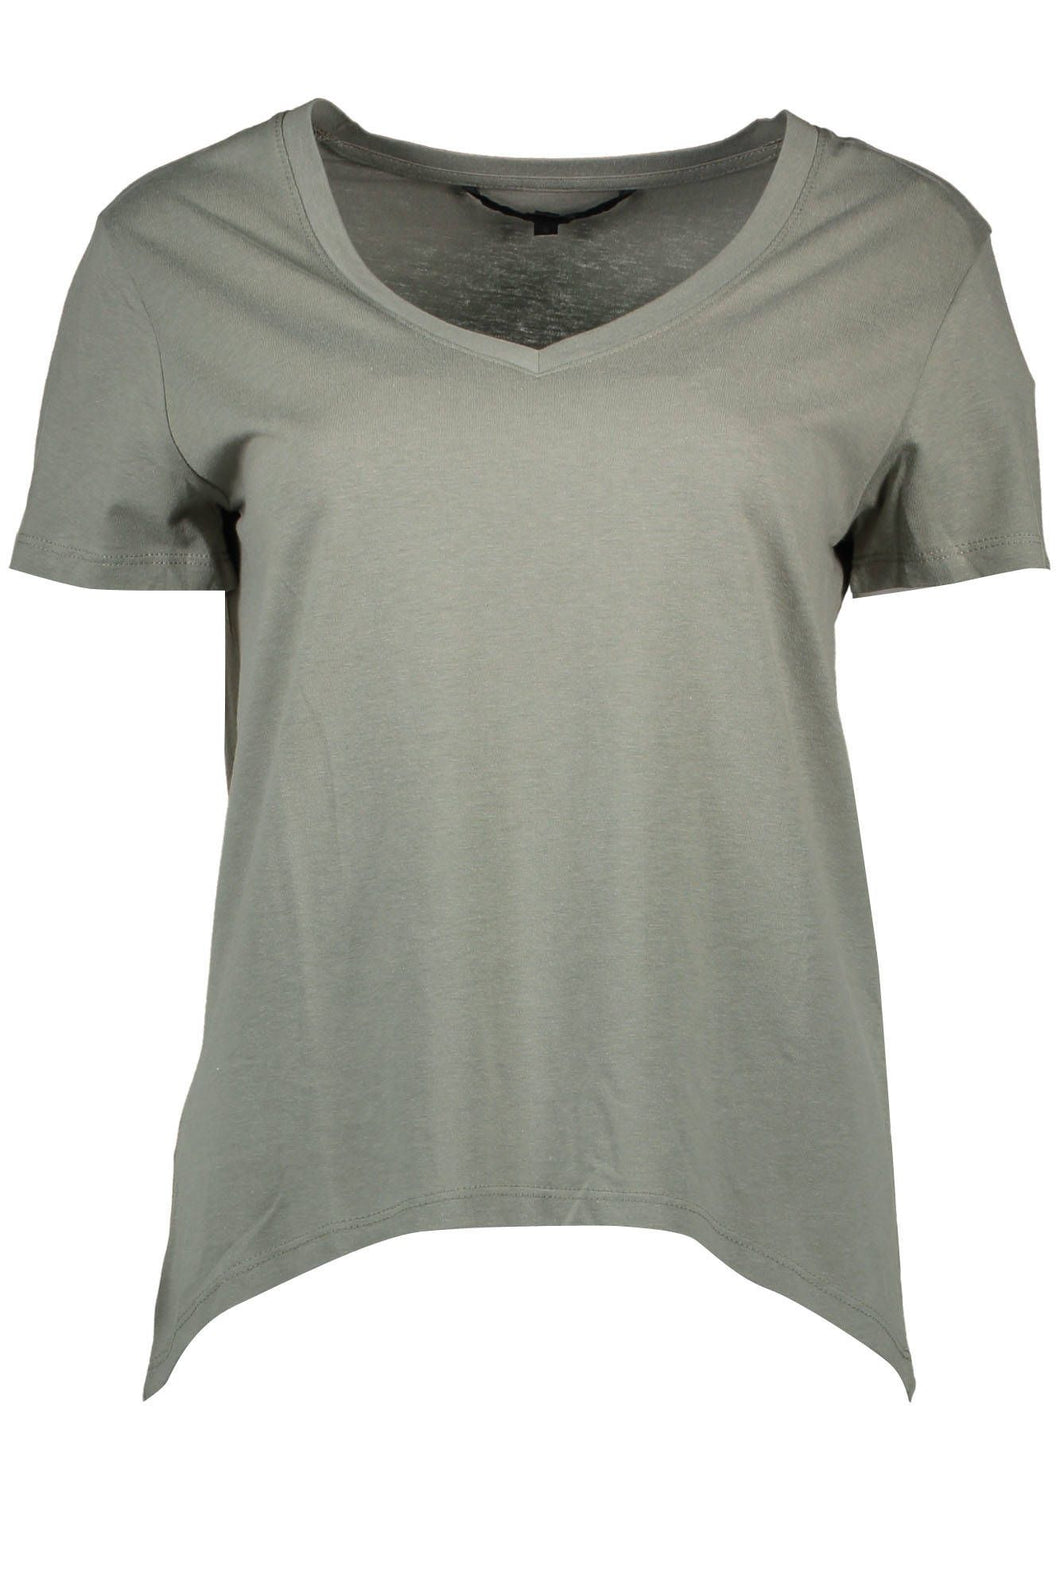 Silvian Heach Green Cotton Tops & T-Shirt